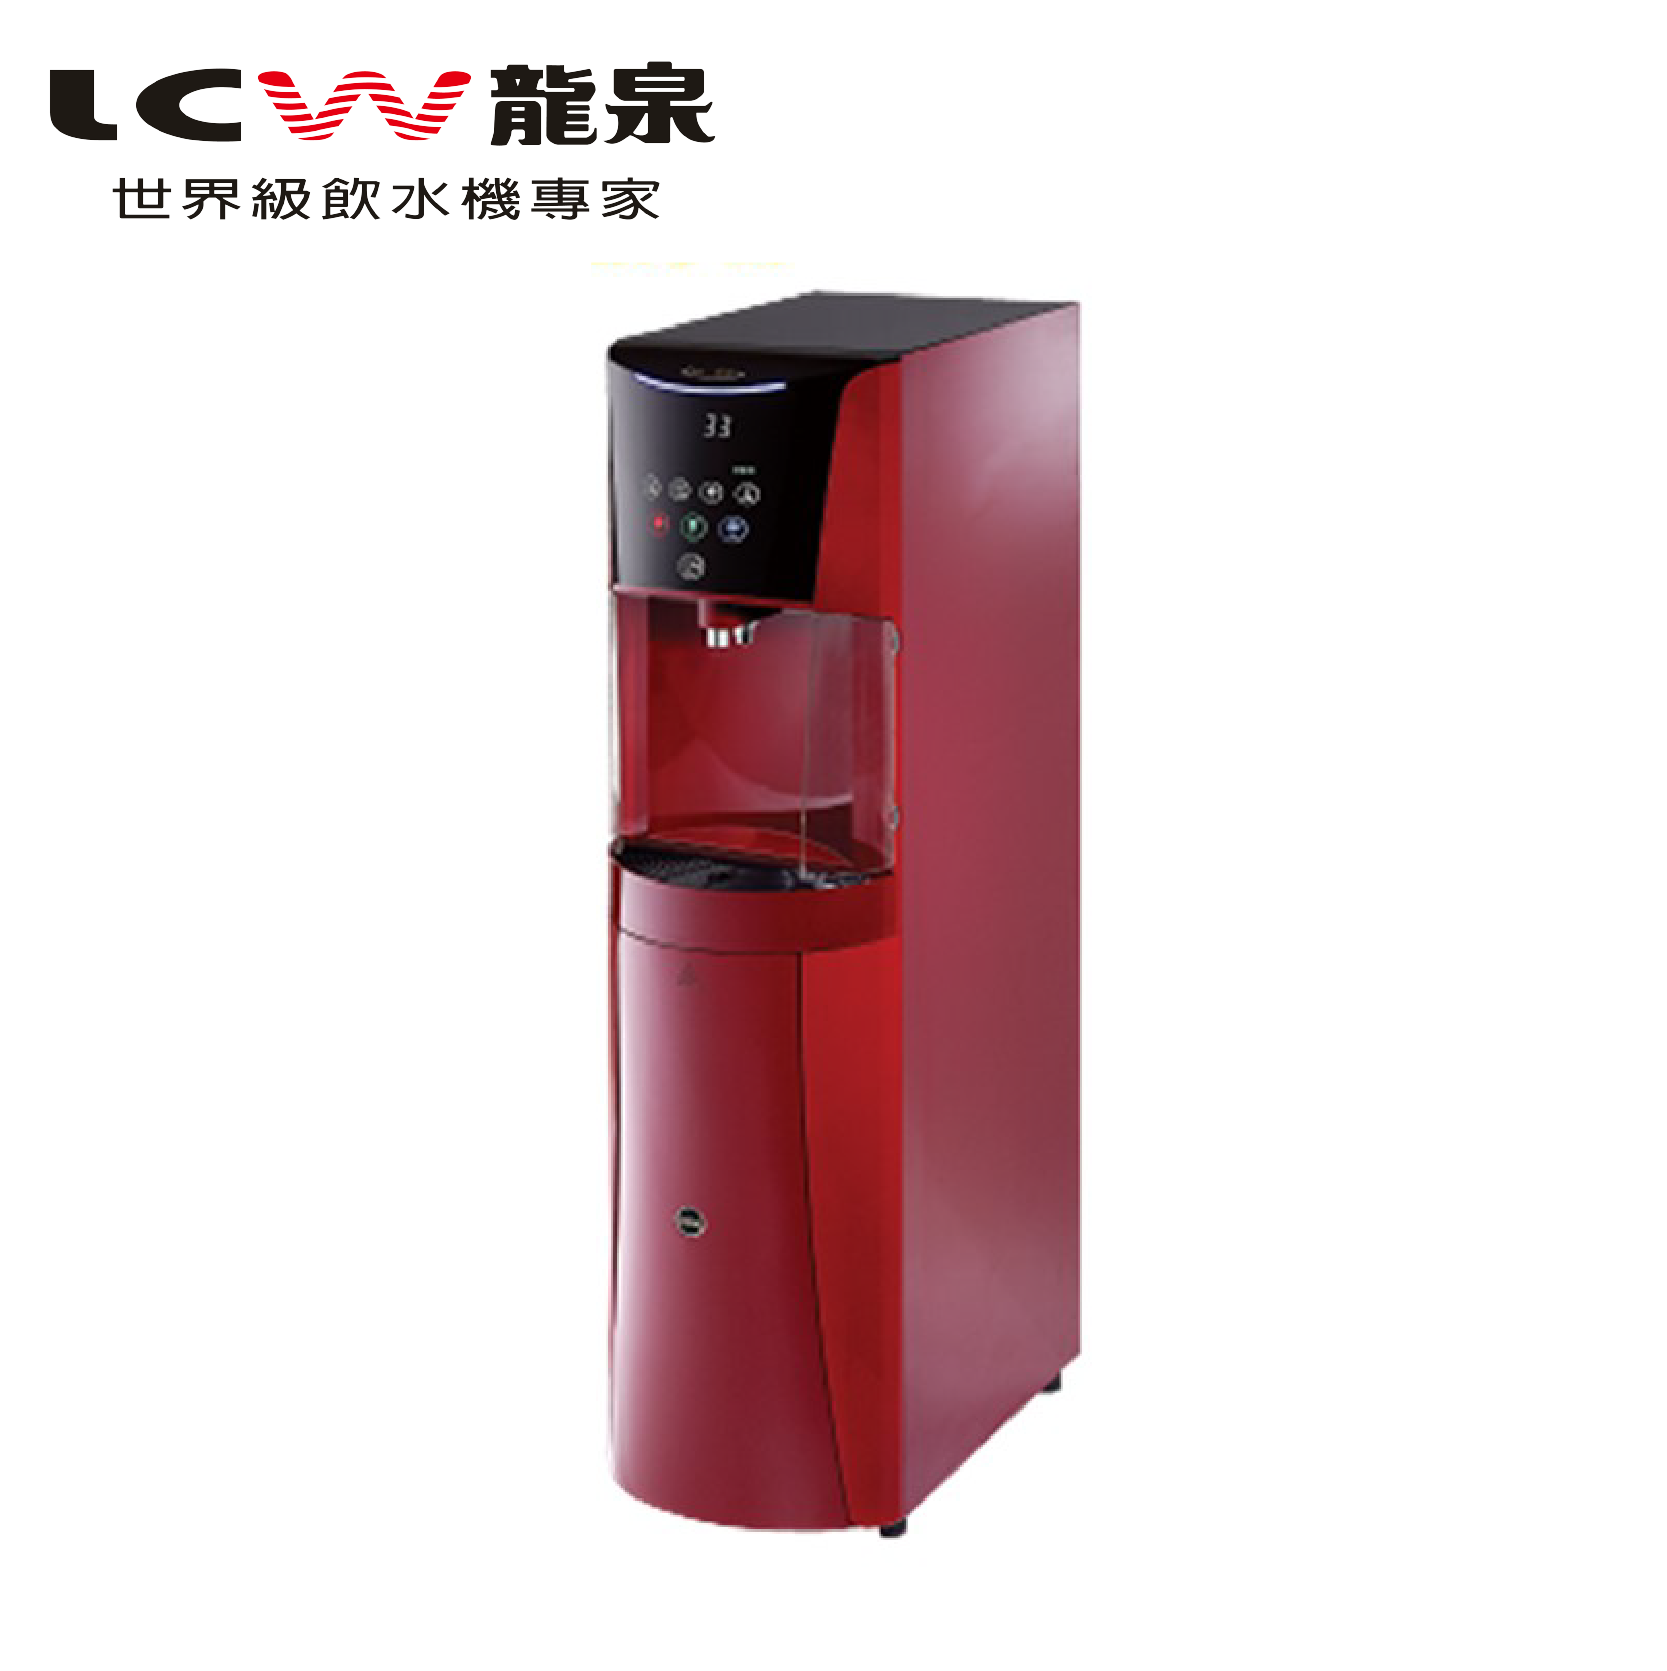 【LCW龍泉】直立型氣泡水&冰溫熱飲水機LC-8872-2AB